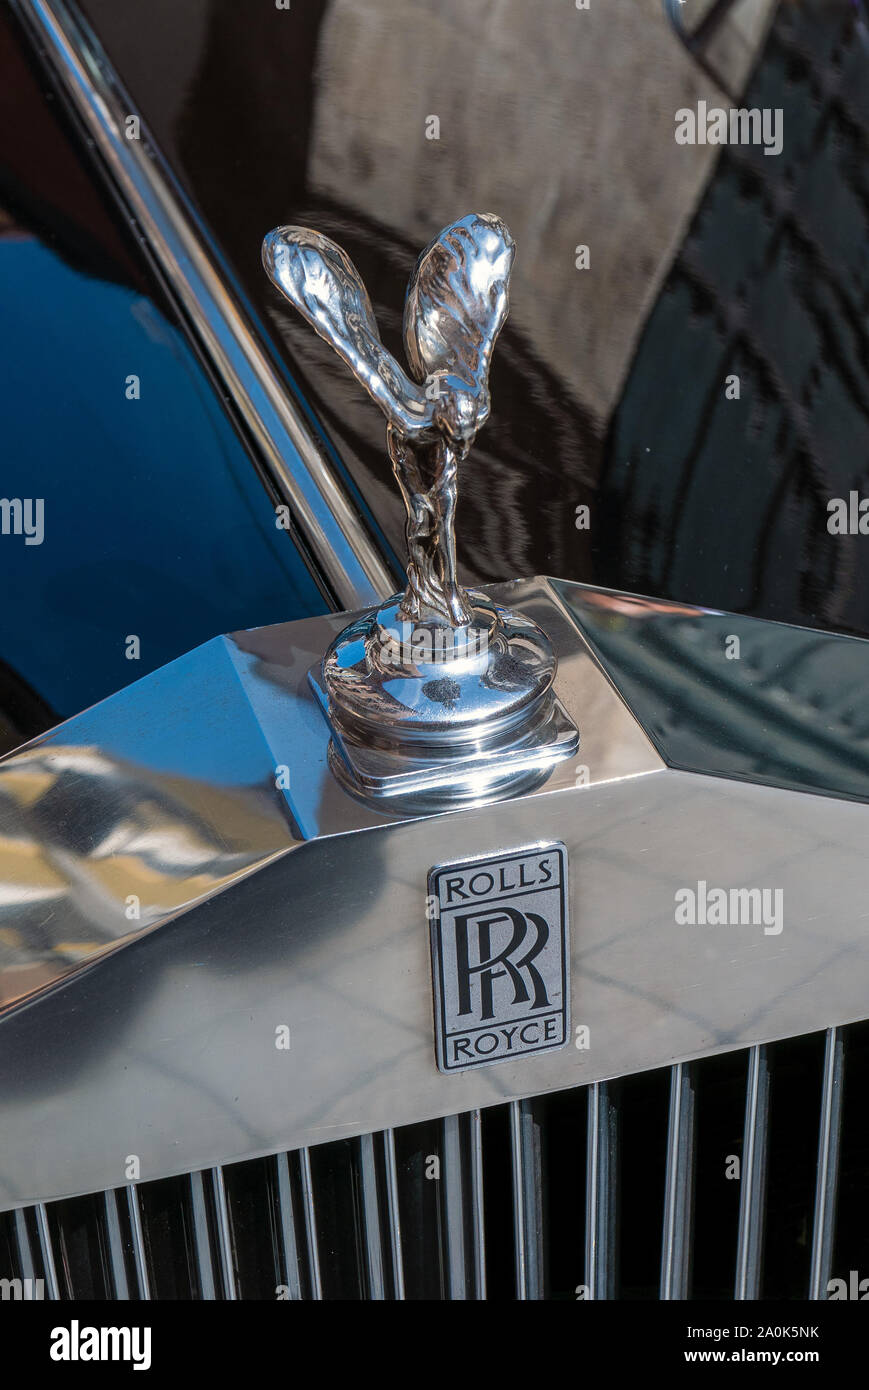 MADRID, España - 14 de septiembre de 2019: vista frontal de un Rolls Royce. Rolls-Royce Motor Cars es un fabricante británico de automóviles de lujo con sede en el G Foto de stock